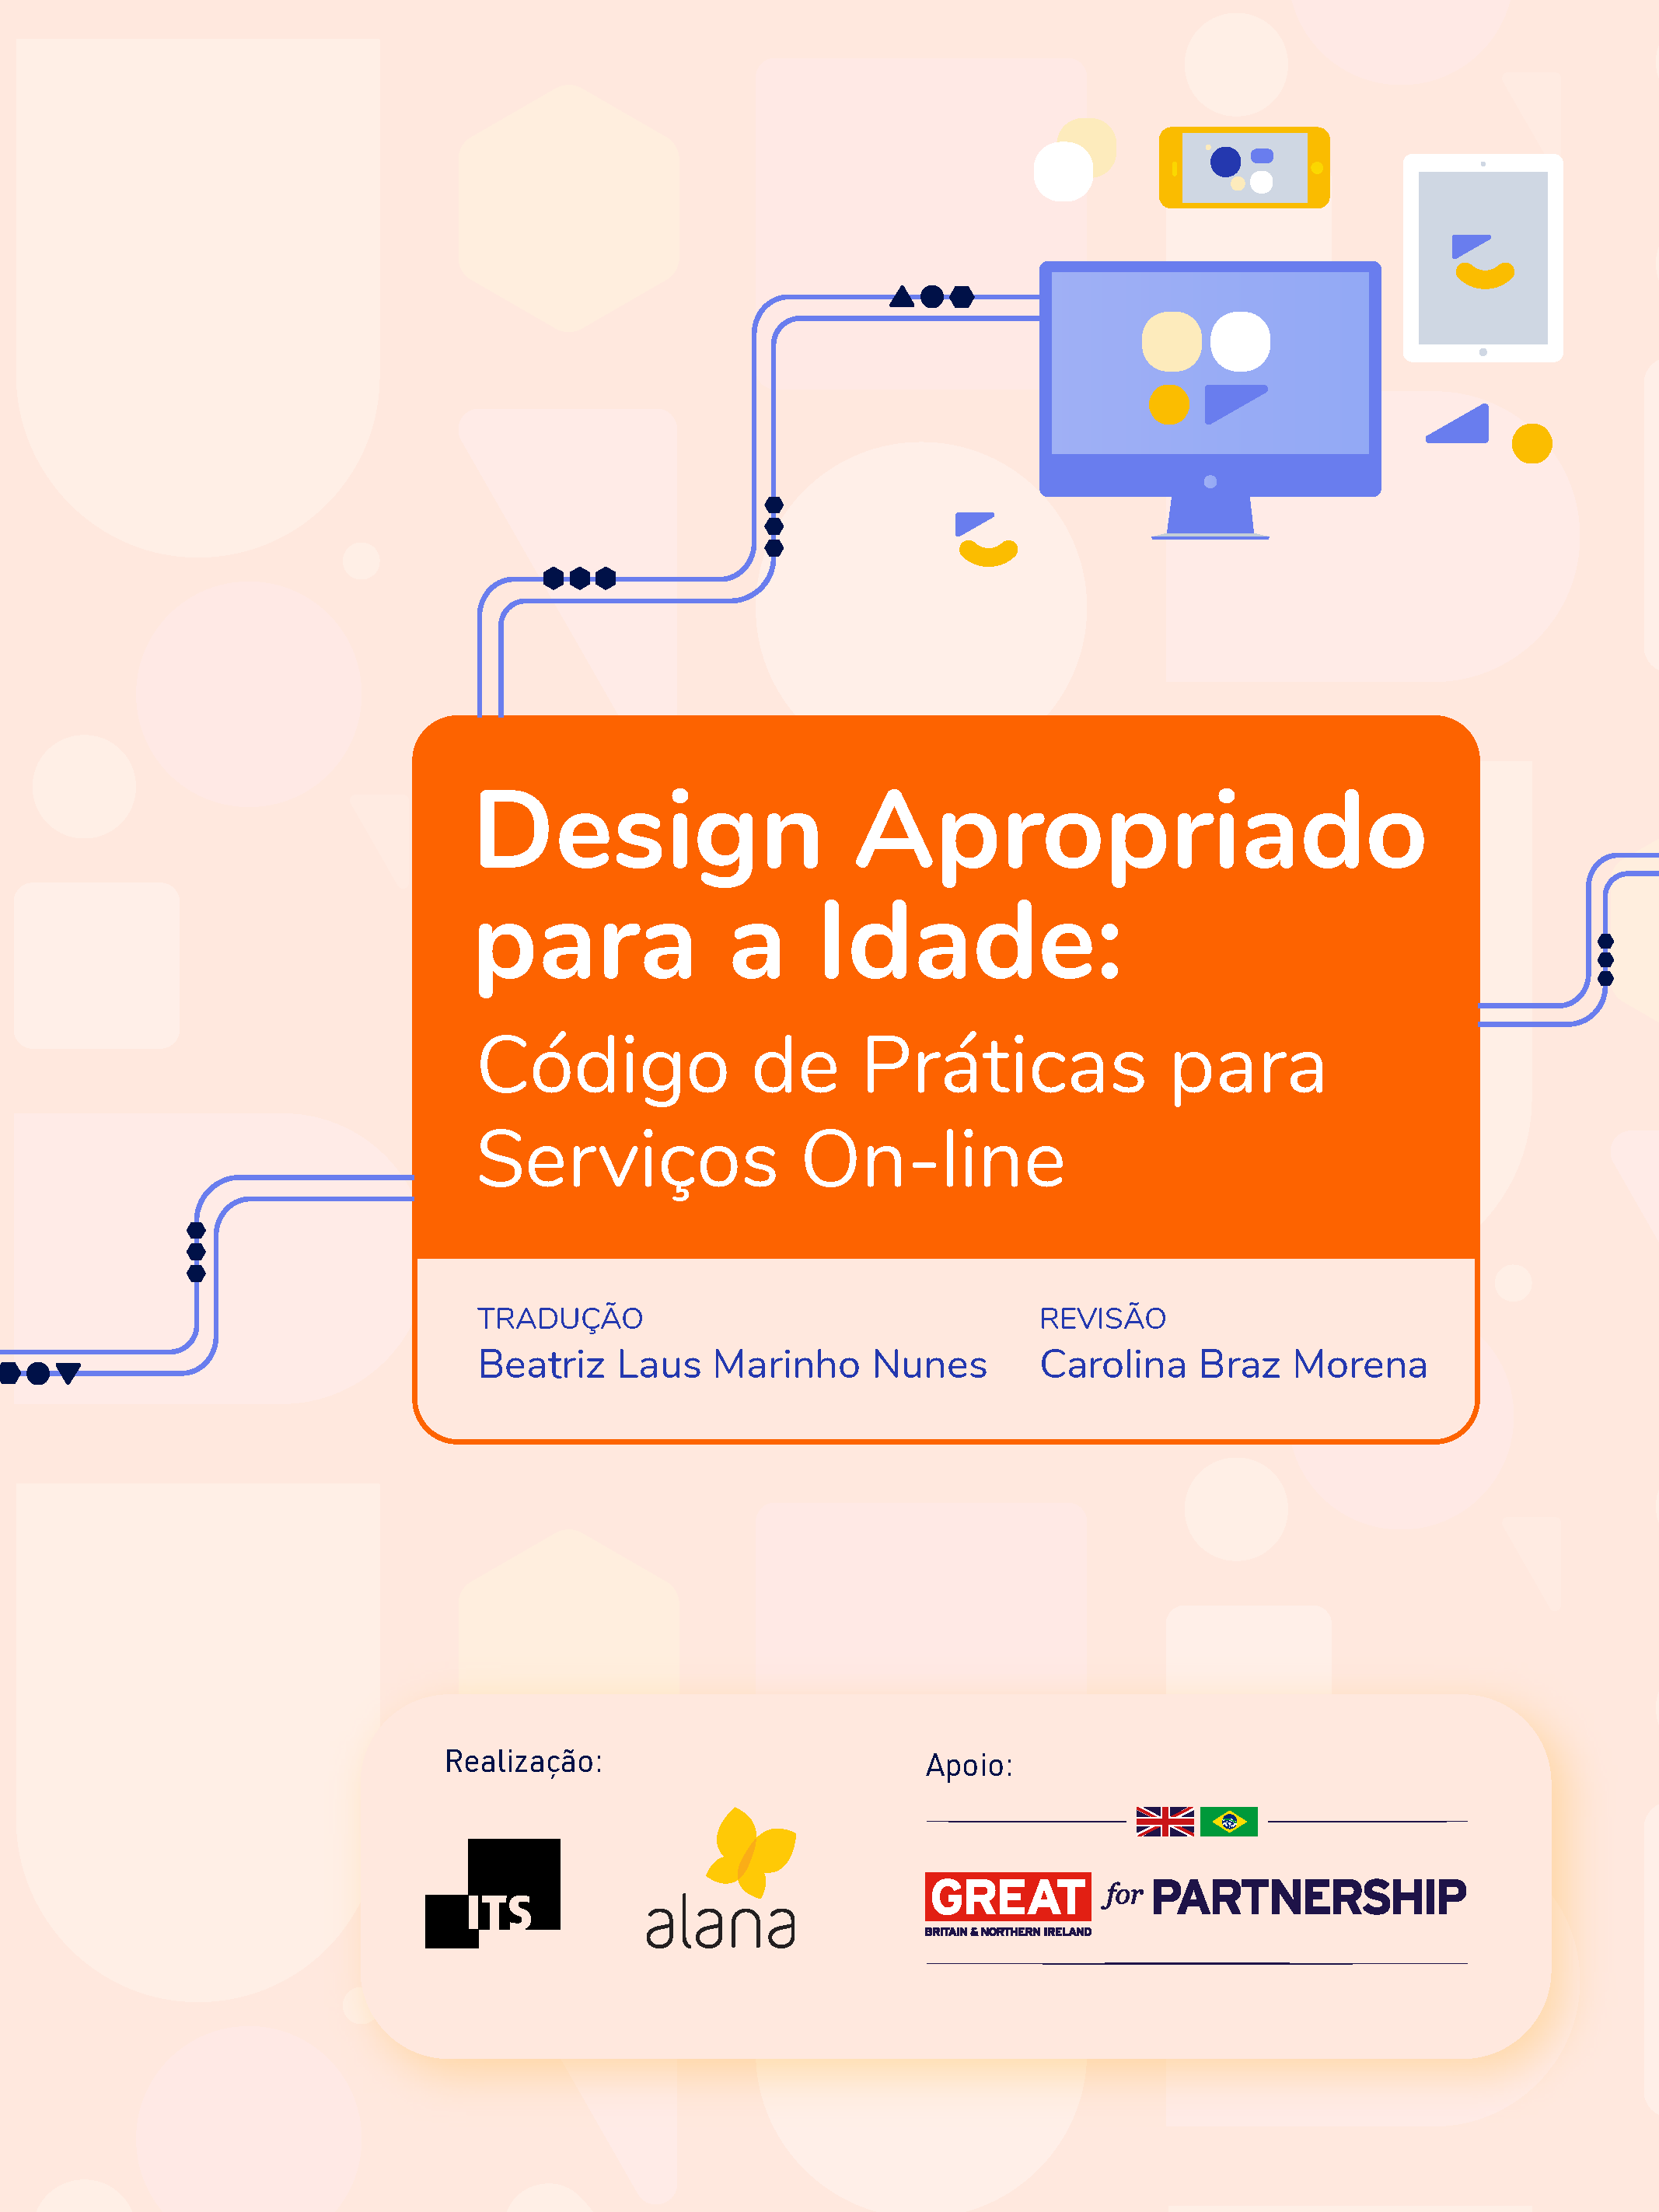 capa do documento "Design Apropriado para a idade: Código de Práticas para Serviços On-line" com logos do ITS, Instituto Alana e embaixada britânica